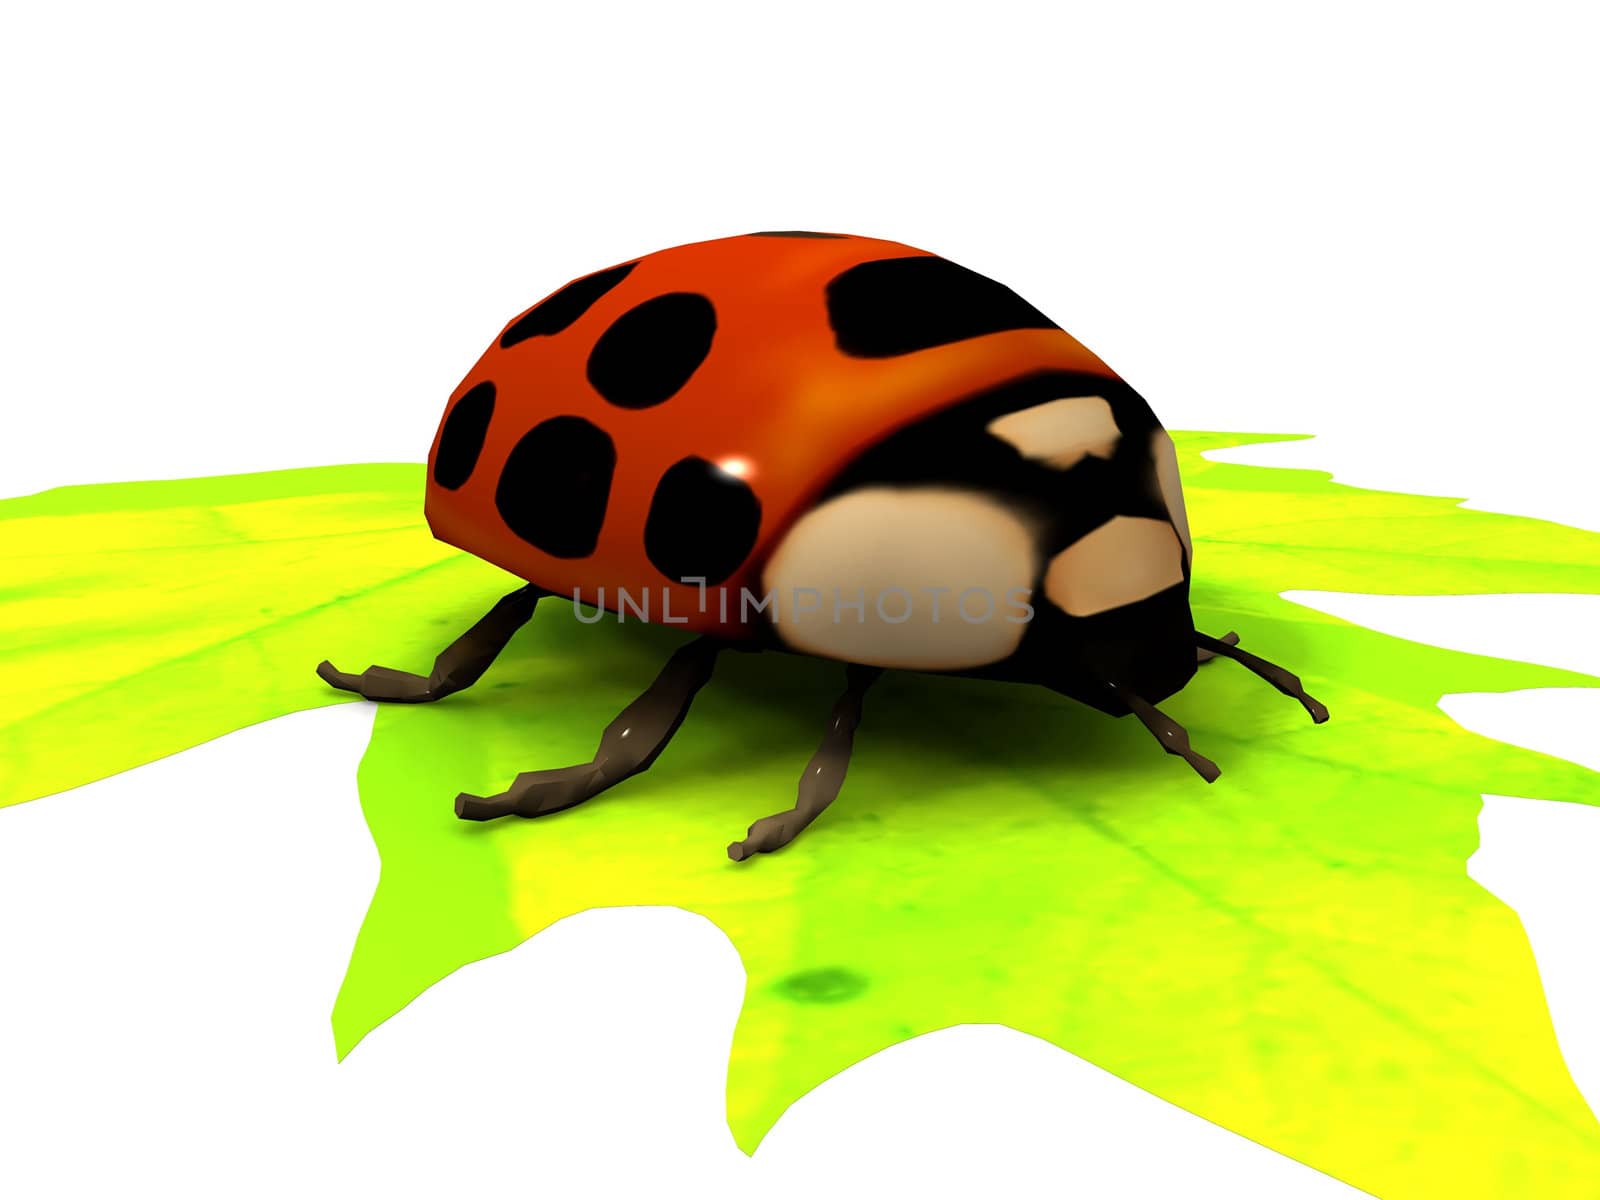 ladybug on a leaf by njaj